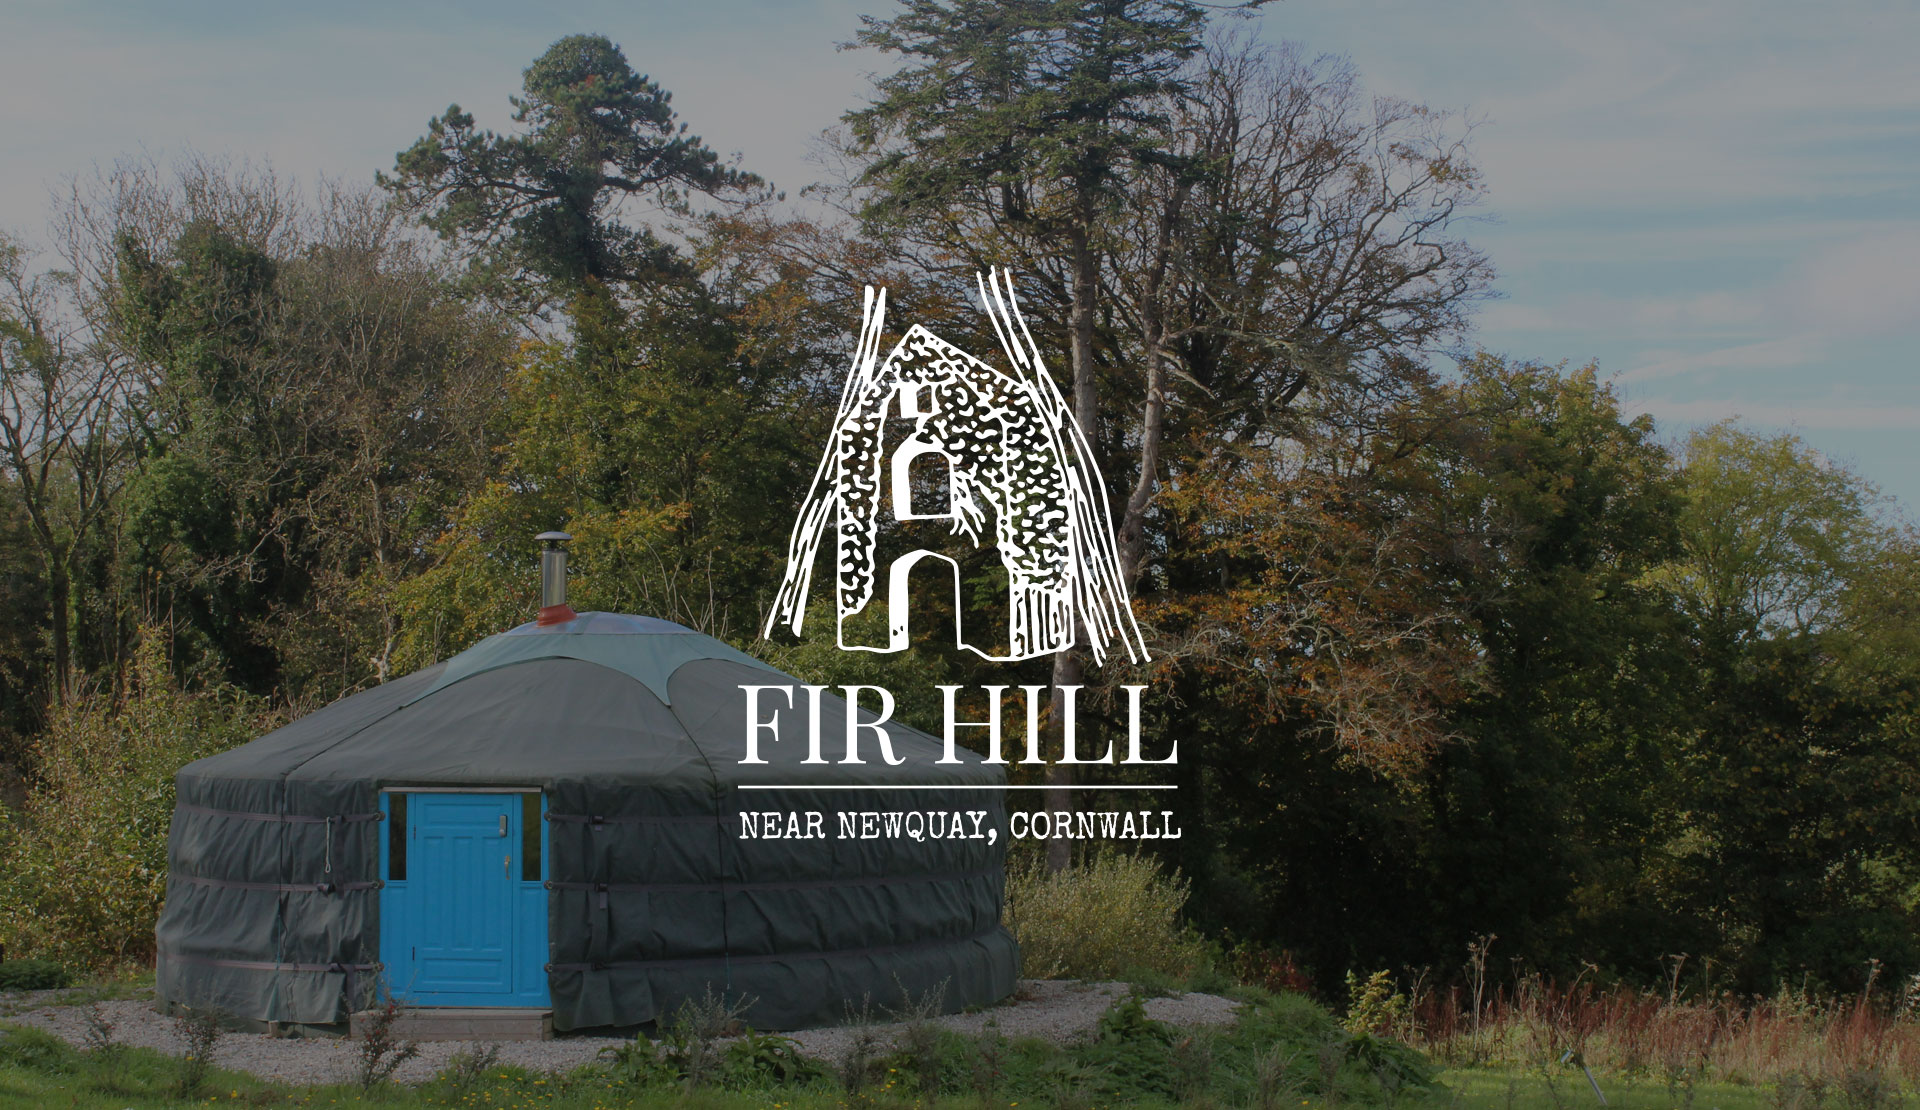 Fir Hill Glamping website design